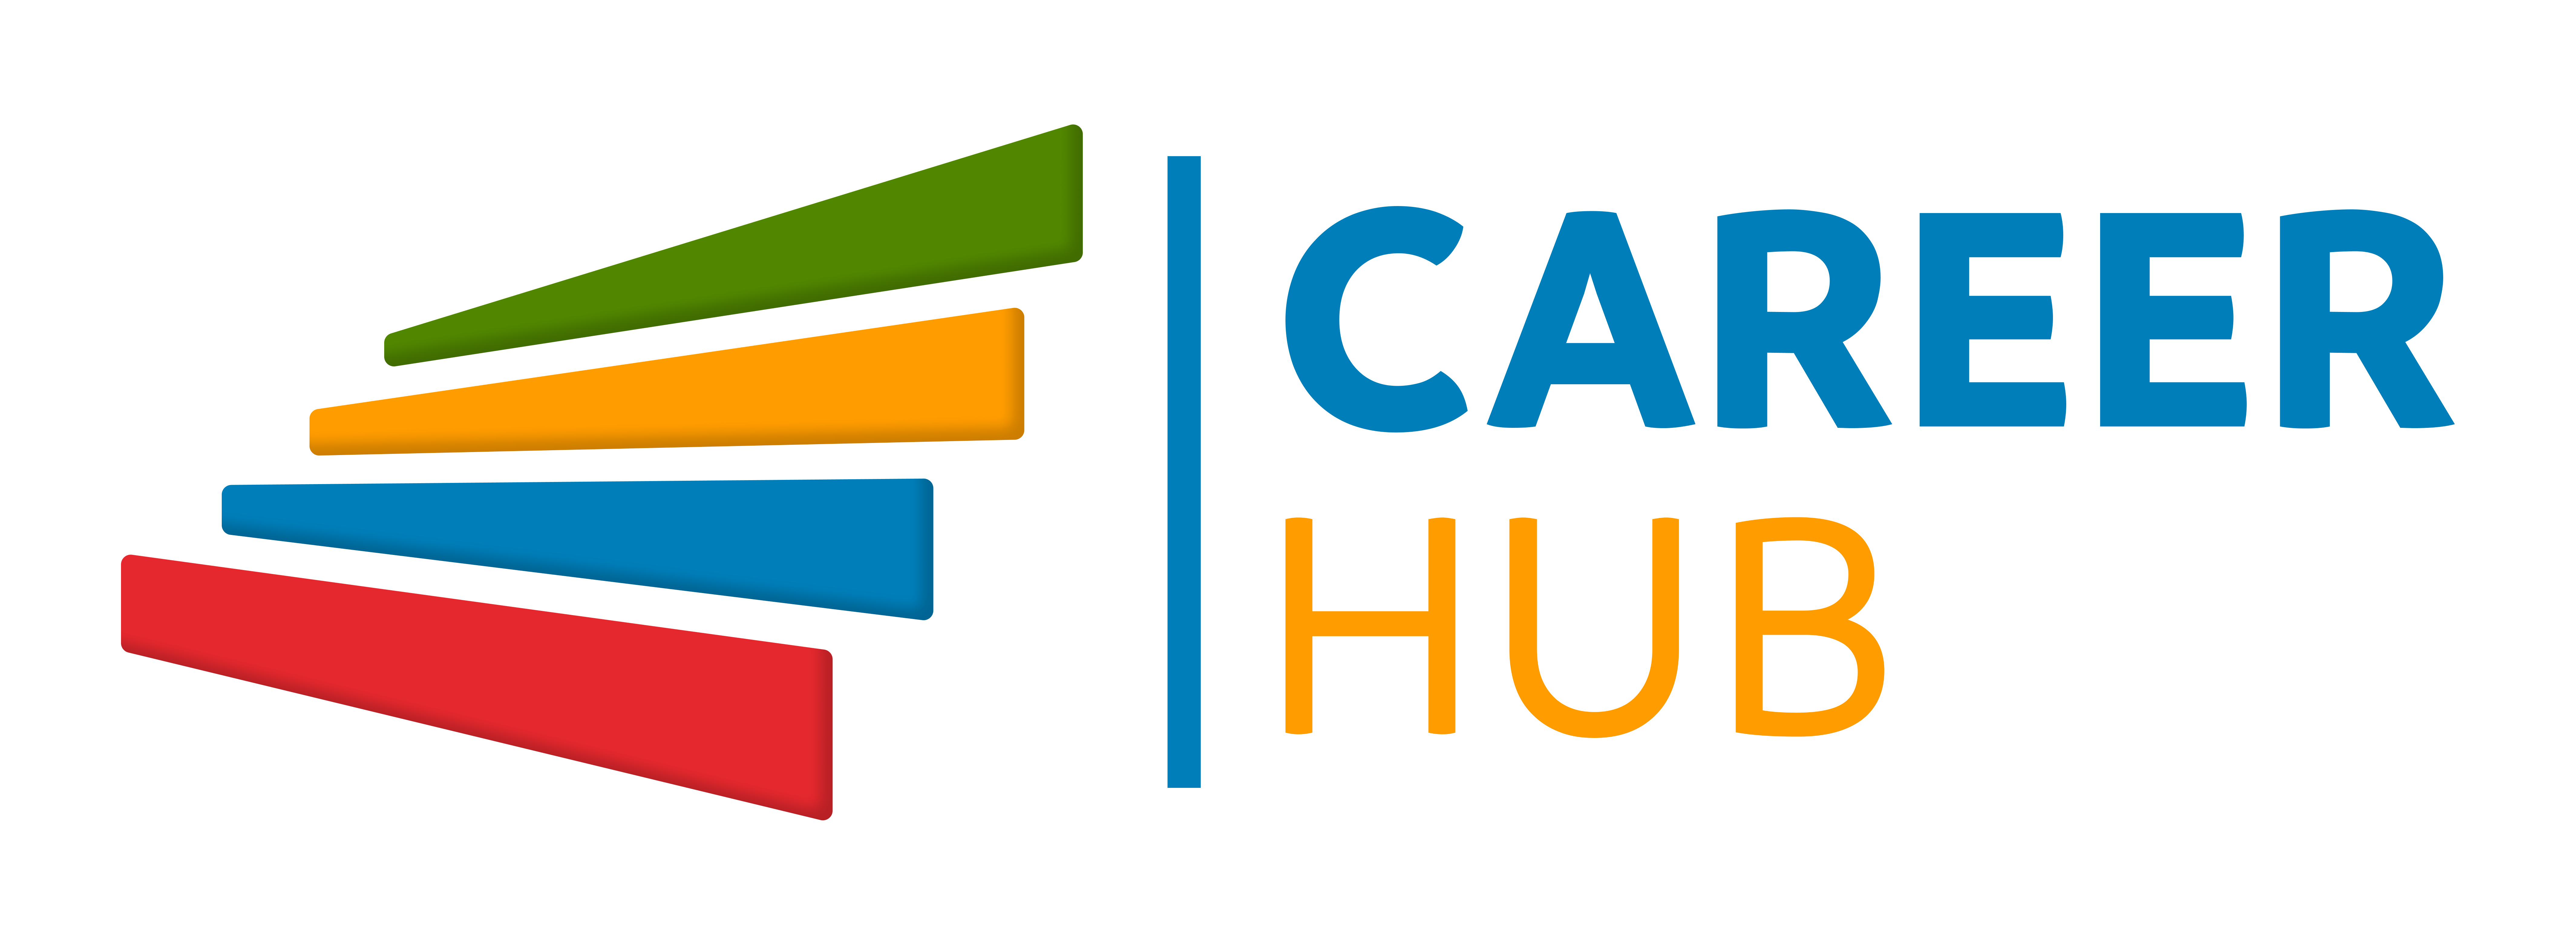 careerhub-logo-2